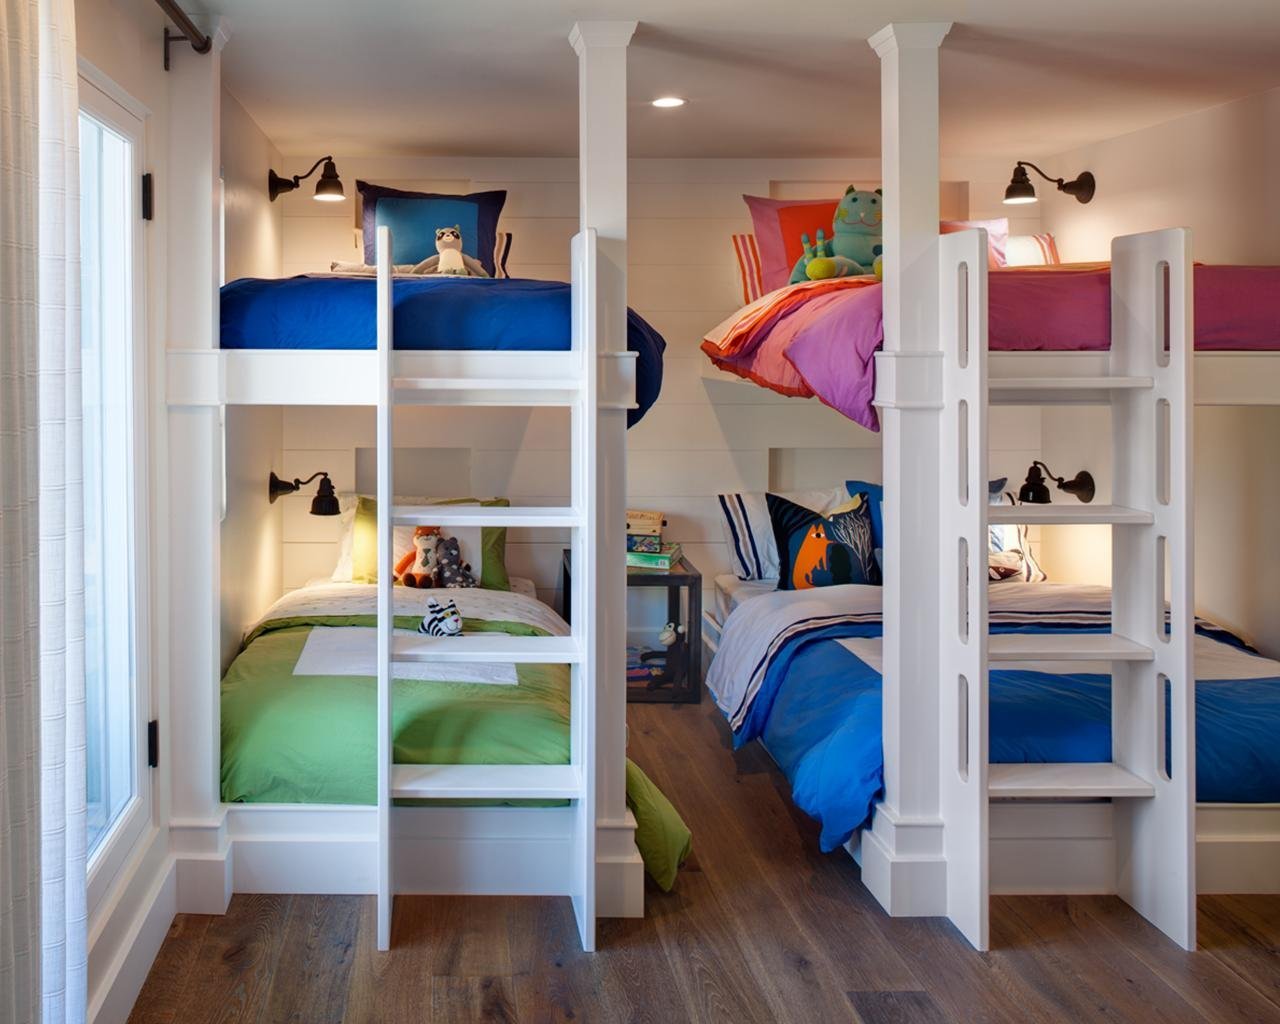 двухъярусная кровать для мальчика и девочки разного возраста